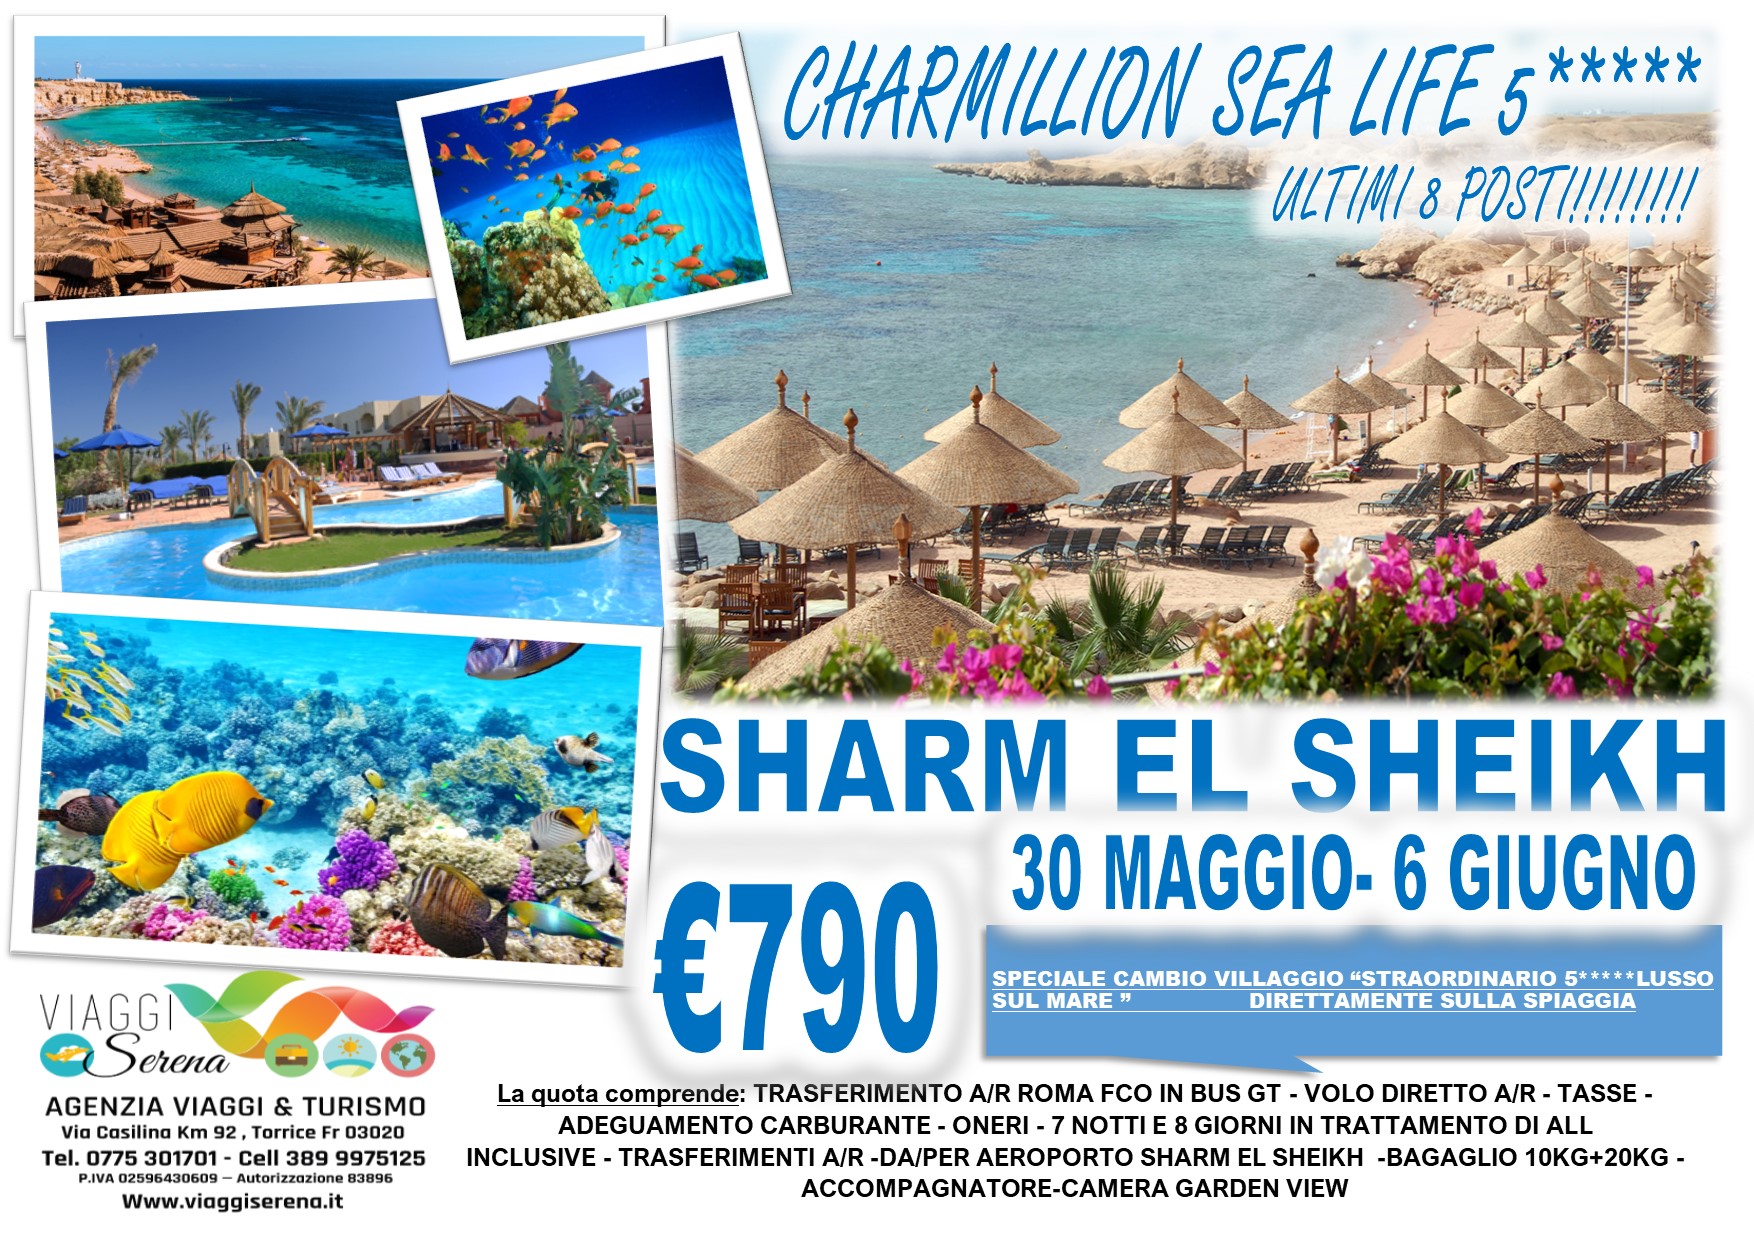 Viaggi di Gruppo: Soggiorno mare Sharm el Sheikh “CHARMILLION SEA LIFE” 30 Maggio-6 Giugno  €790,00